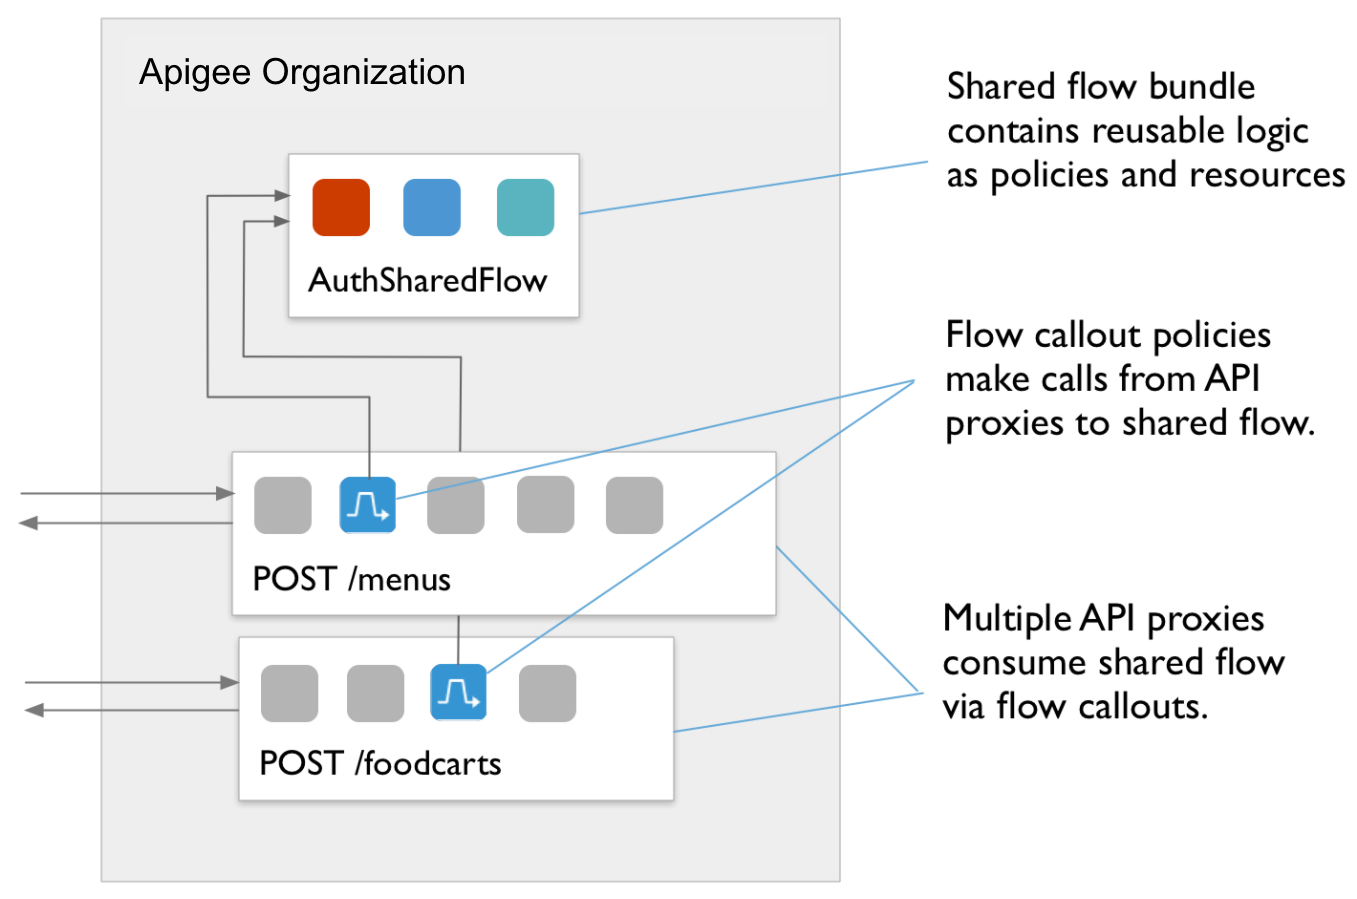 Ablaufdiagramm mit POST-/foodcarts-Richtlinie zur POST-/menus-Richtlinie zu AuthSharedFlow.
          Callout-Text:
          a) Mehrere API-Proxys nutzen freigegebenen Ablauf über FlowCallouts.
          b) FlowCallout-Richtlinien führen Aufrufe von API-Proxys zu einem gemeinsam genutzten Ablauf aus.
          c) Das freigegebene Ablauf-Bundle enthält wiederverwendbare Logik als Richtlinien und Ressourcen.